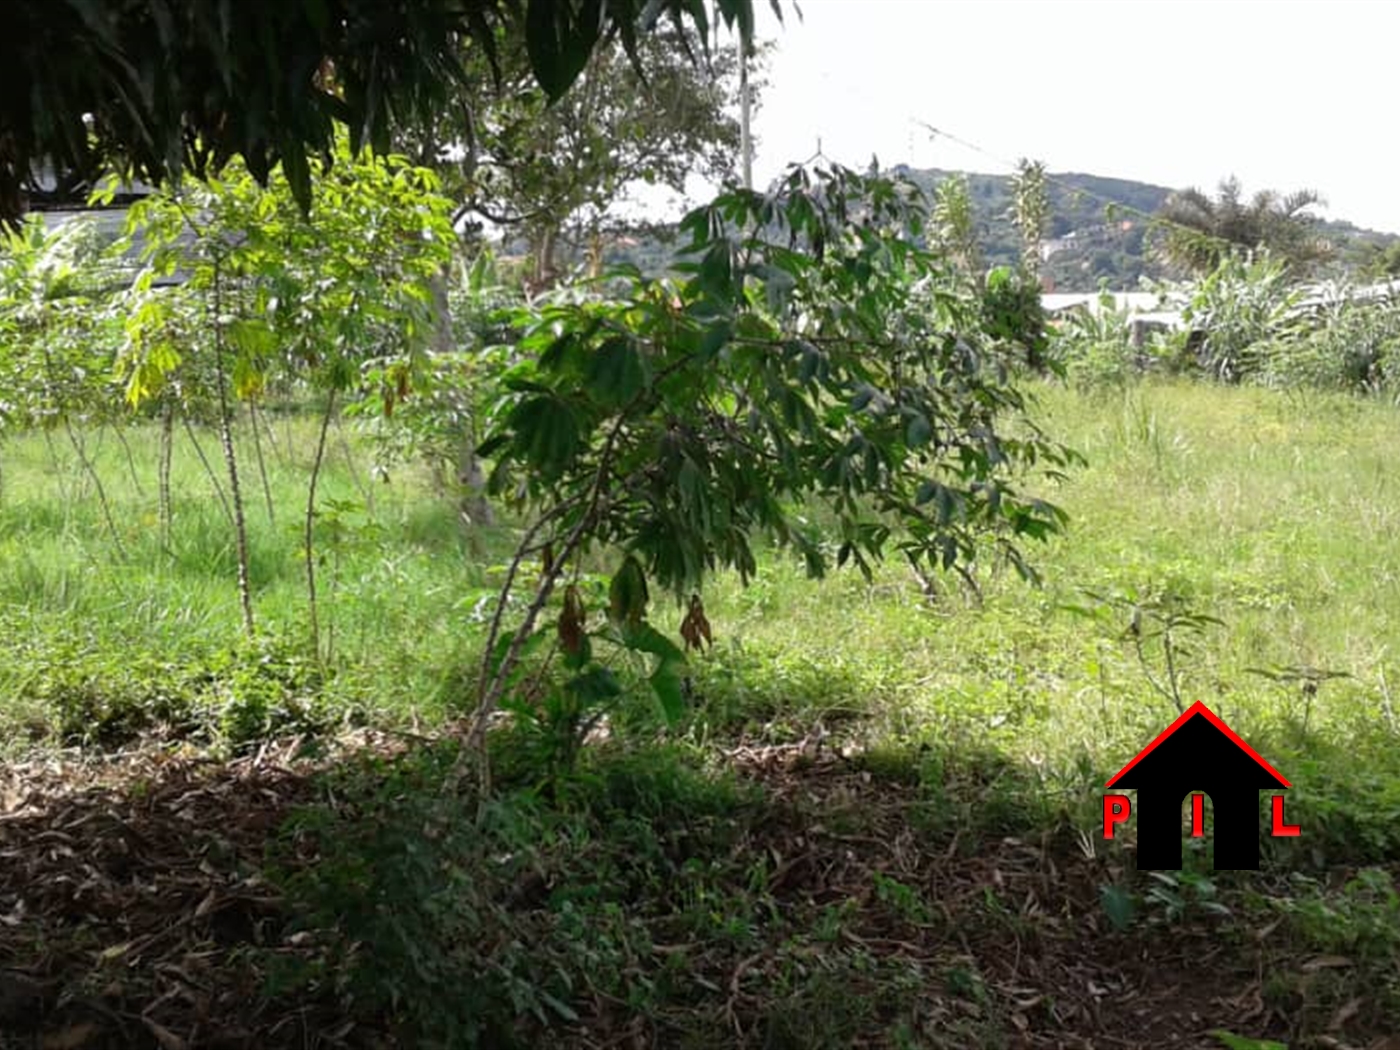 Agricultural Land for sale in Nkokonjeru Luweero